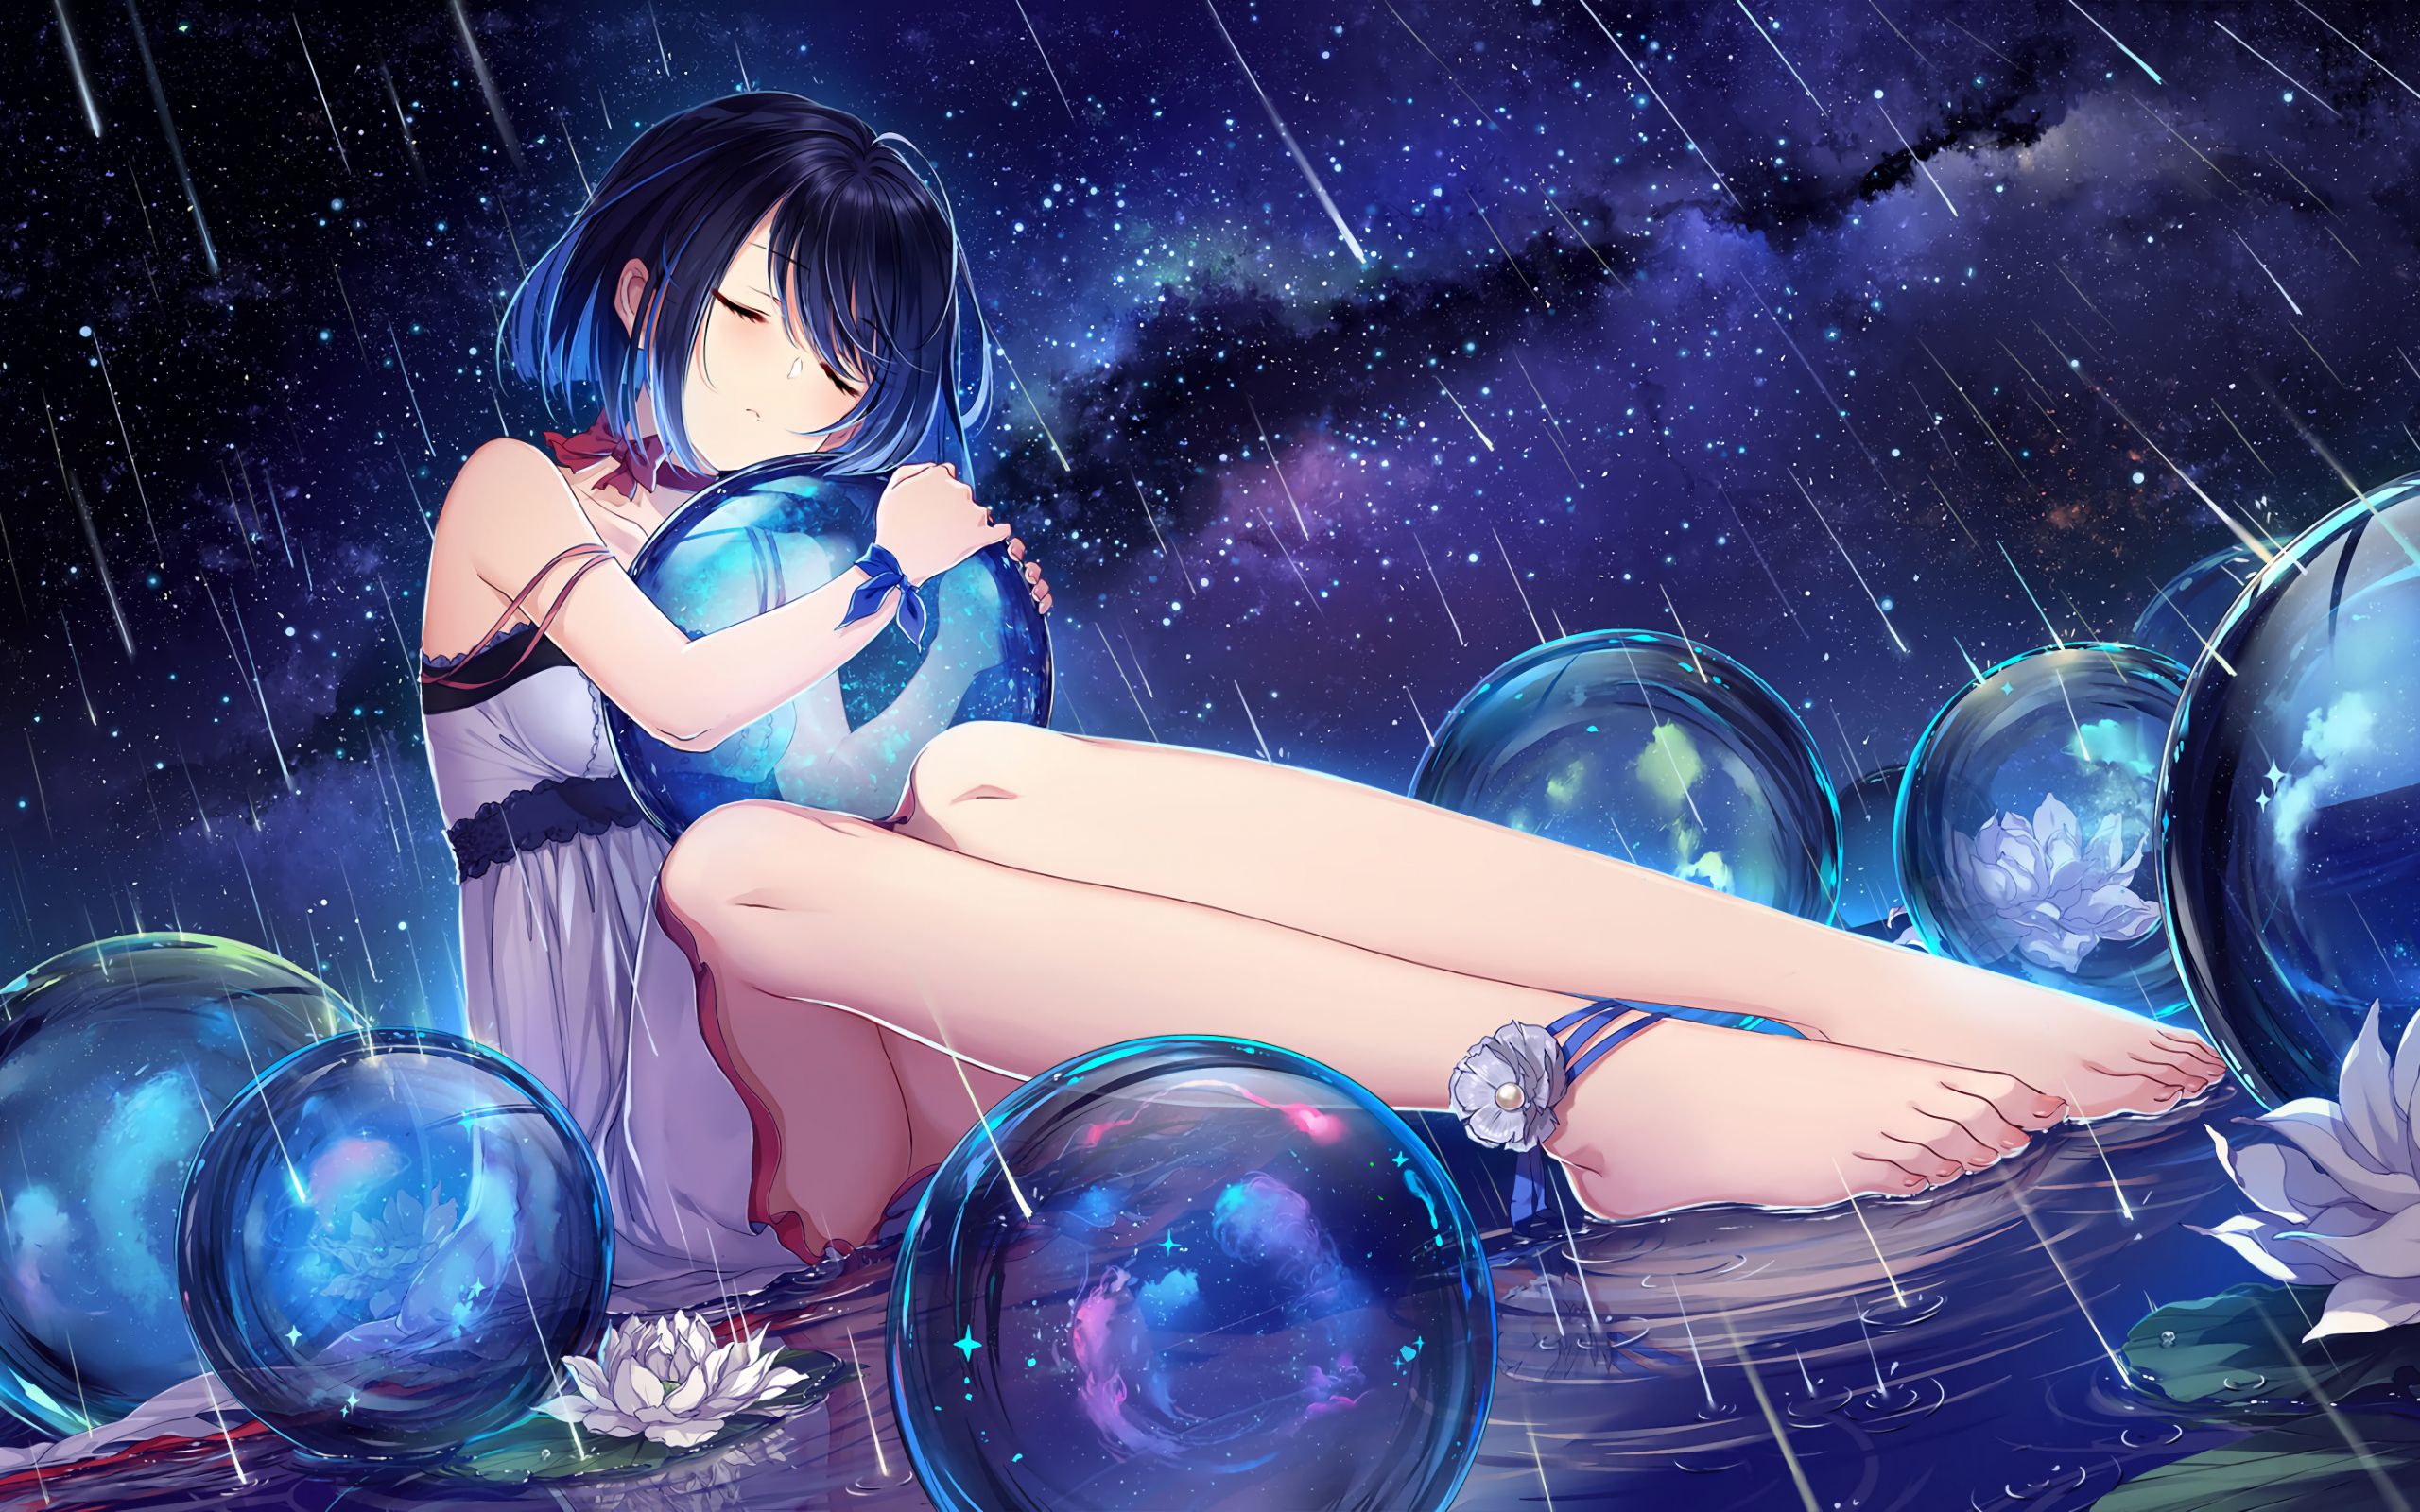 Desktop Wallpaper Rain, Anime Girl, Balls, Night, HD Image, Picture, Background, Zsznkv